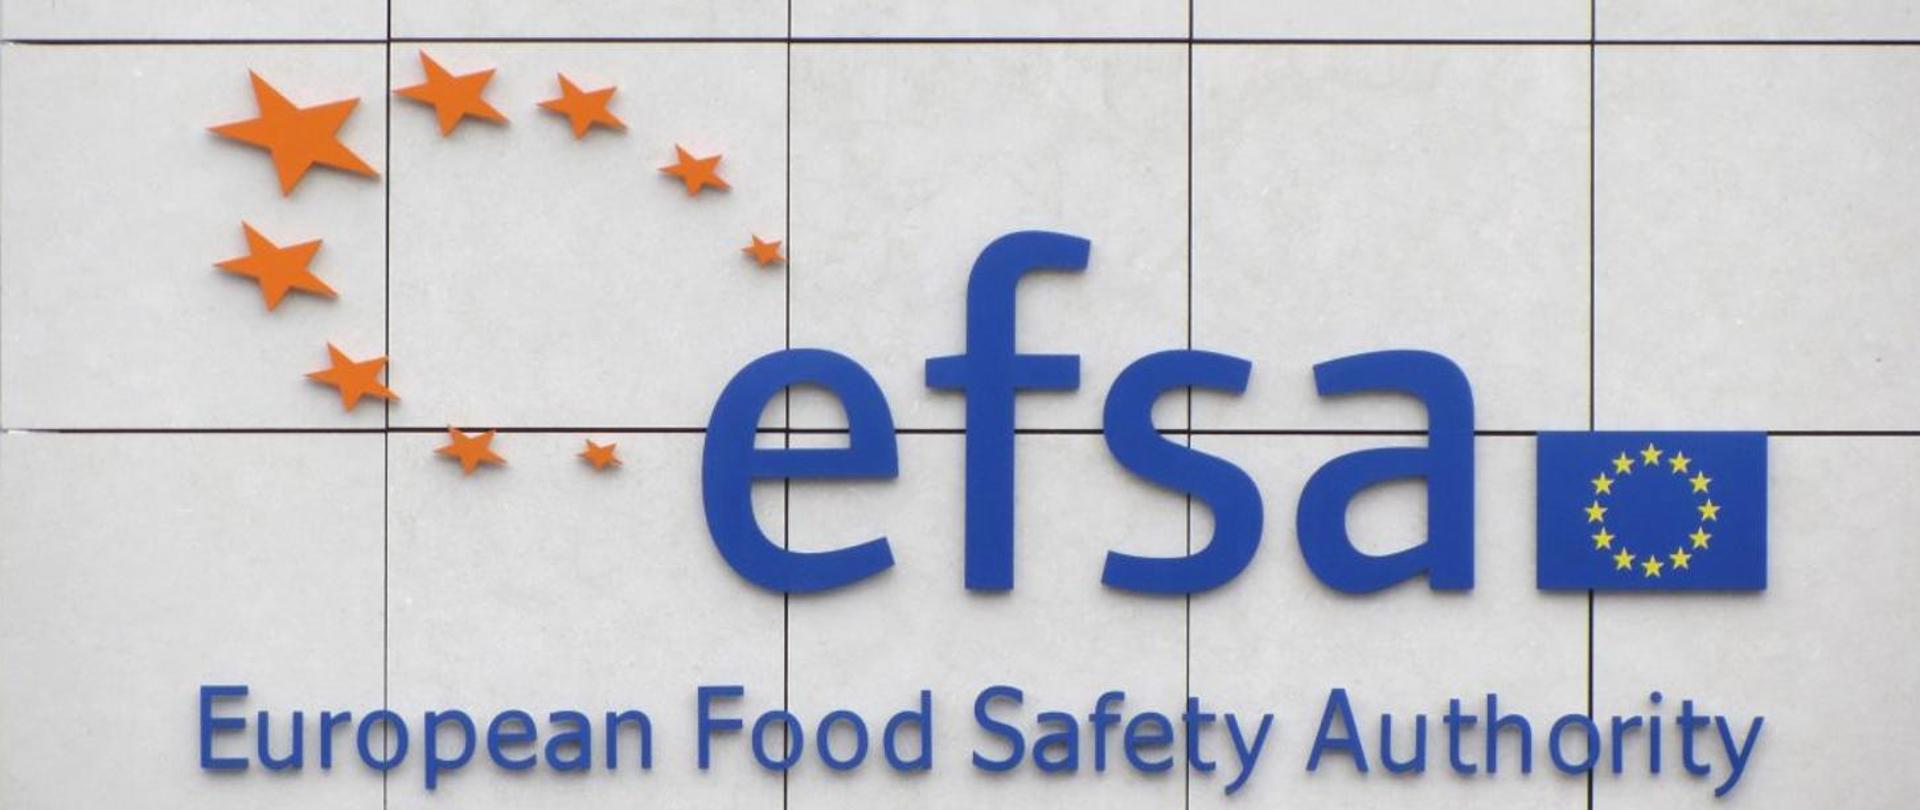 Na zdjęciu znajduje się flaga Unii Europejskiej, obok skrót EFSA oraz 9 gwiazdek ułożonych w owal. Pod skrótem napis - European Food Safety Authority.